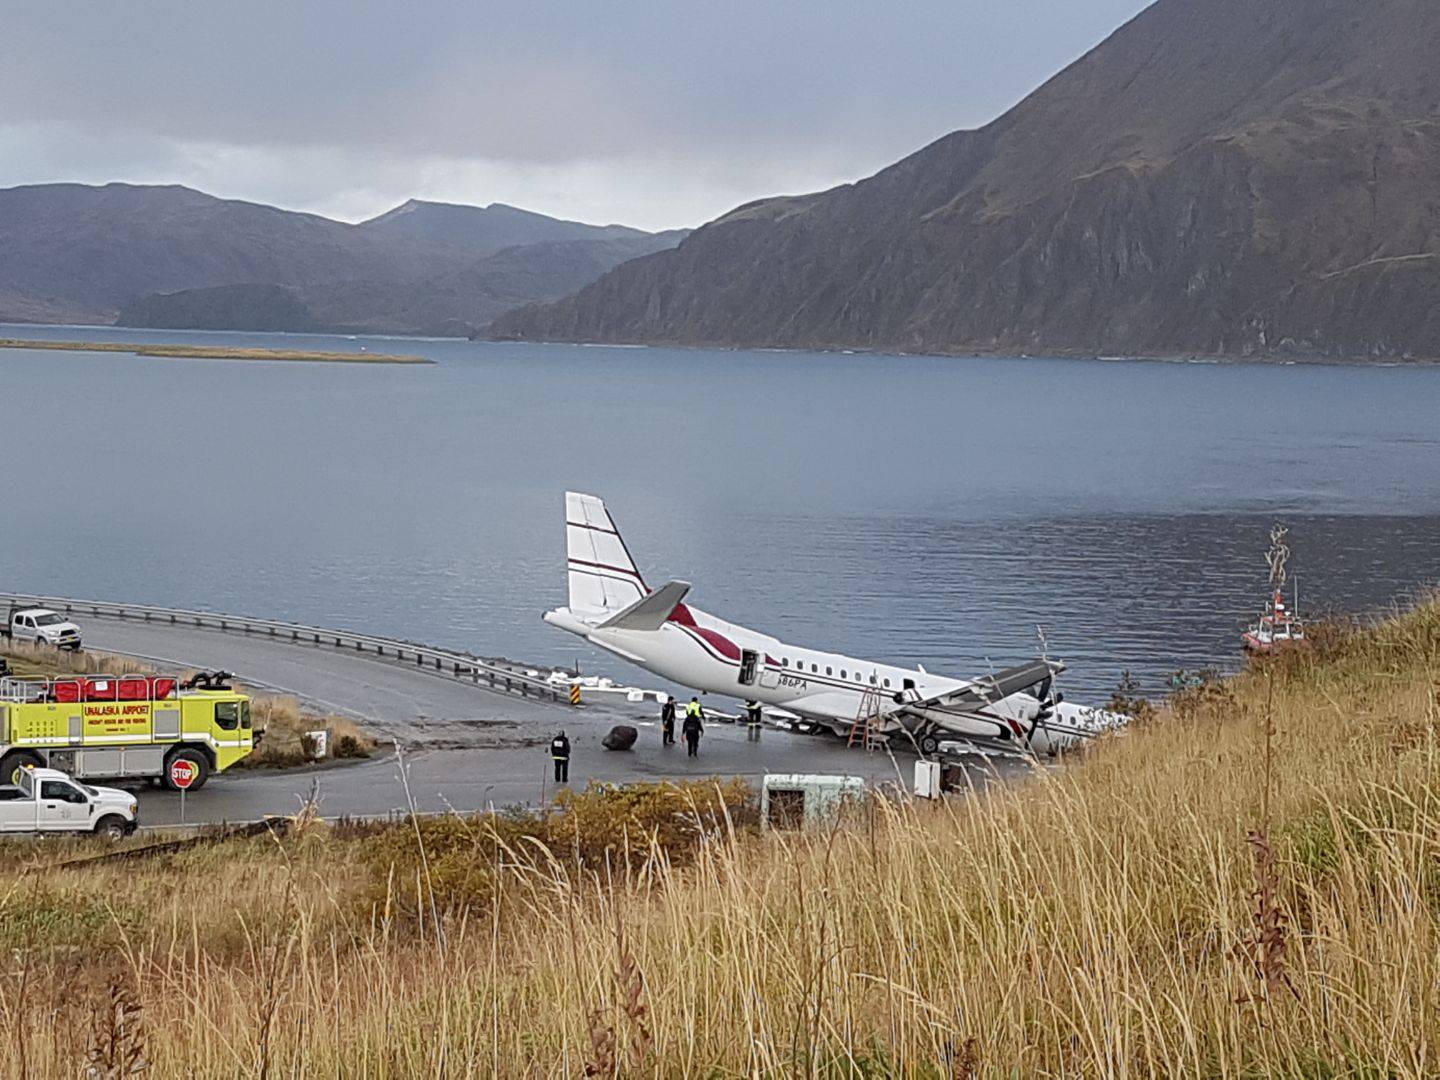 Penair plane overshot runway missed wind Dutch Harbor Unalaska flight